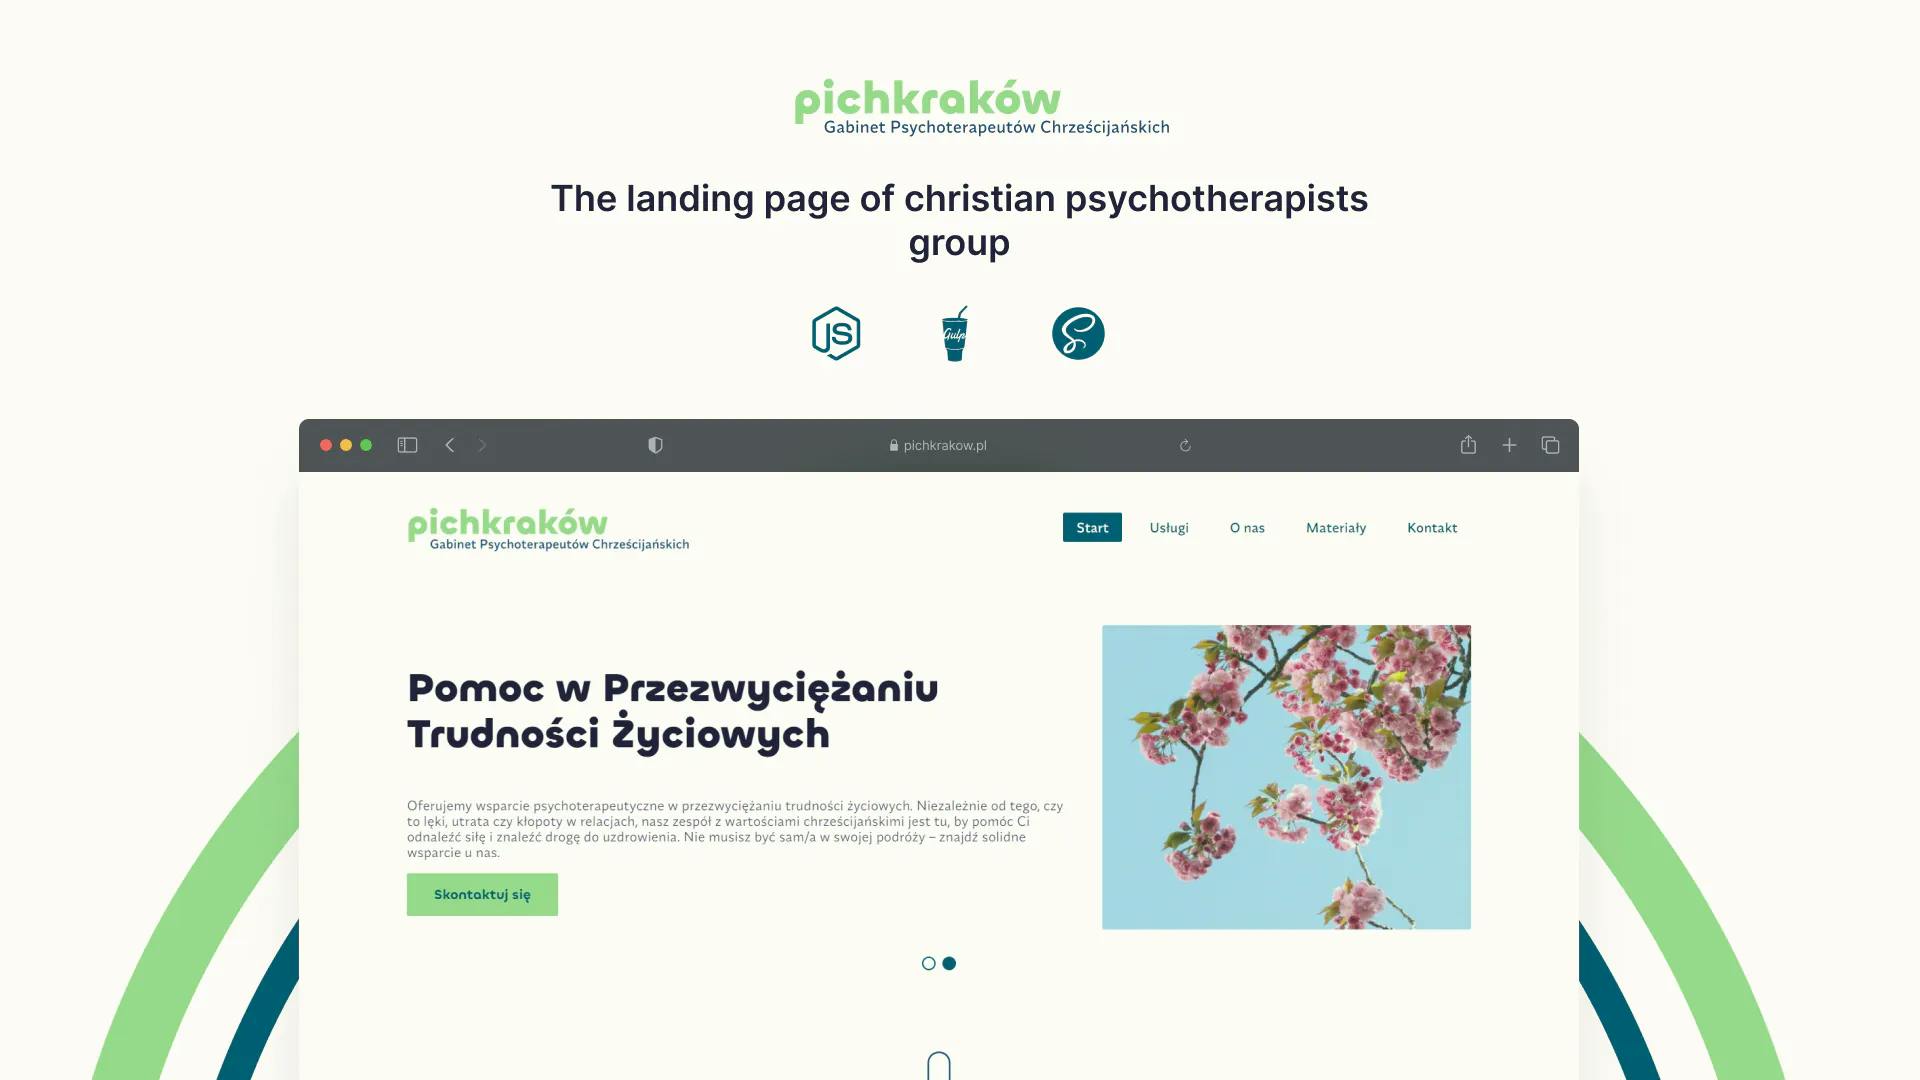 Pichkrakow.pl